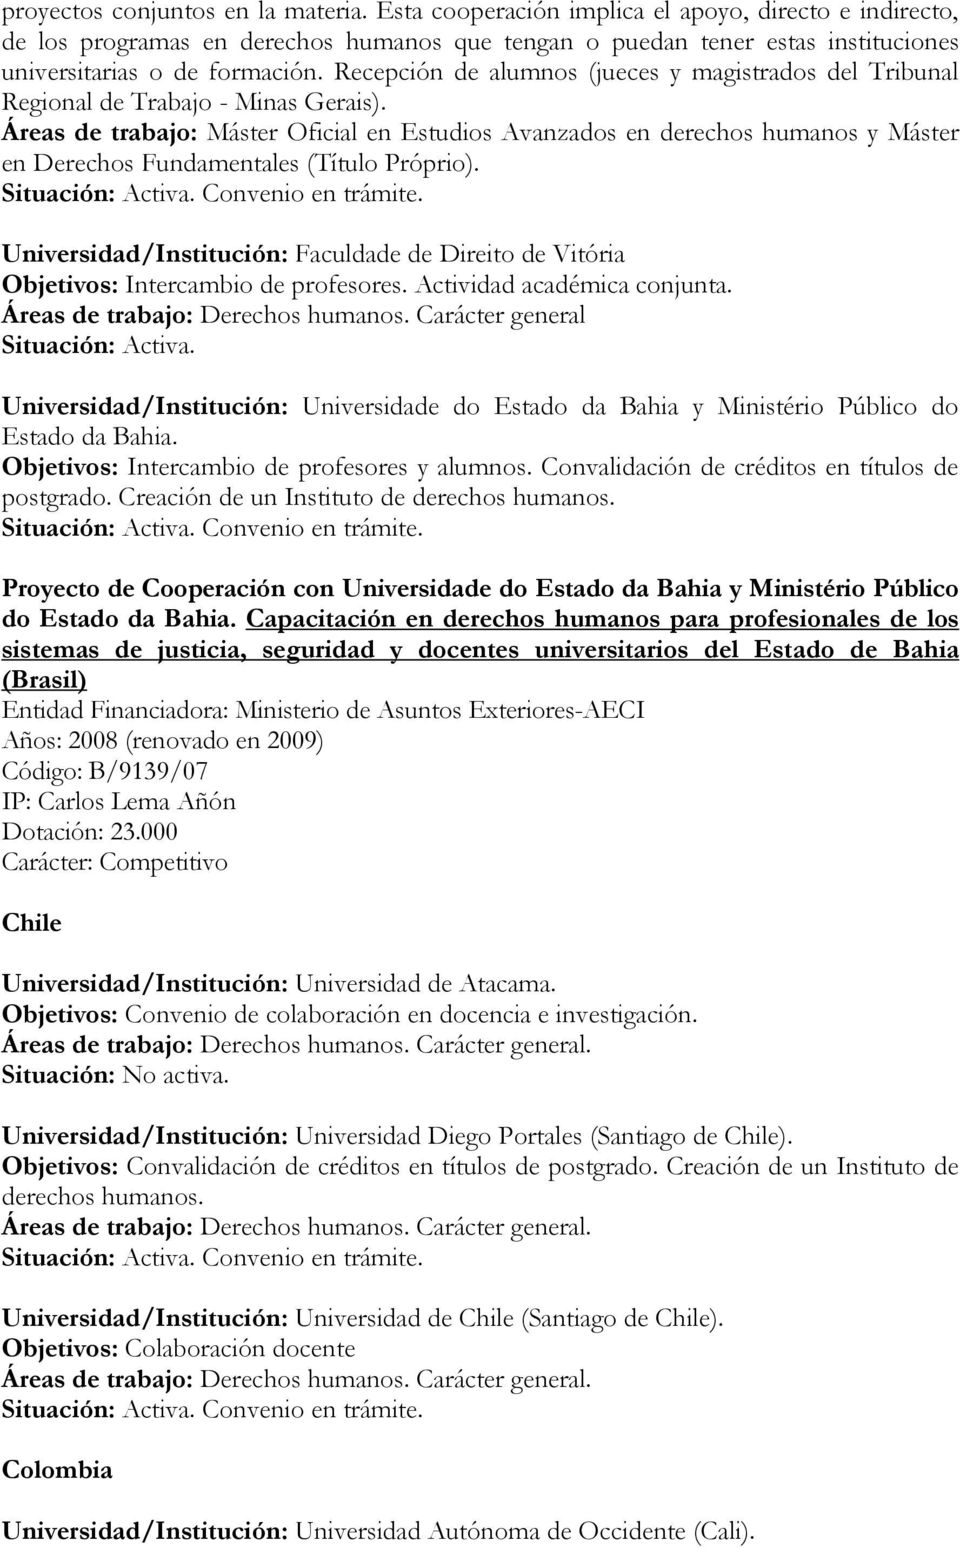 Recepción de alumnos (jueces y magistrados del Tribunal Regional de Trabajo - Minas Gerais).